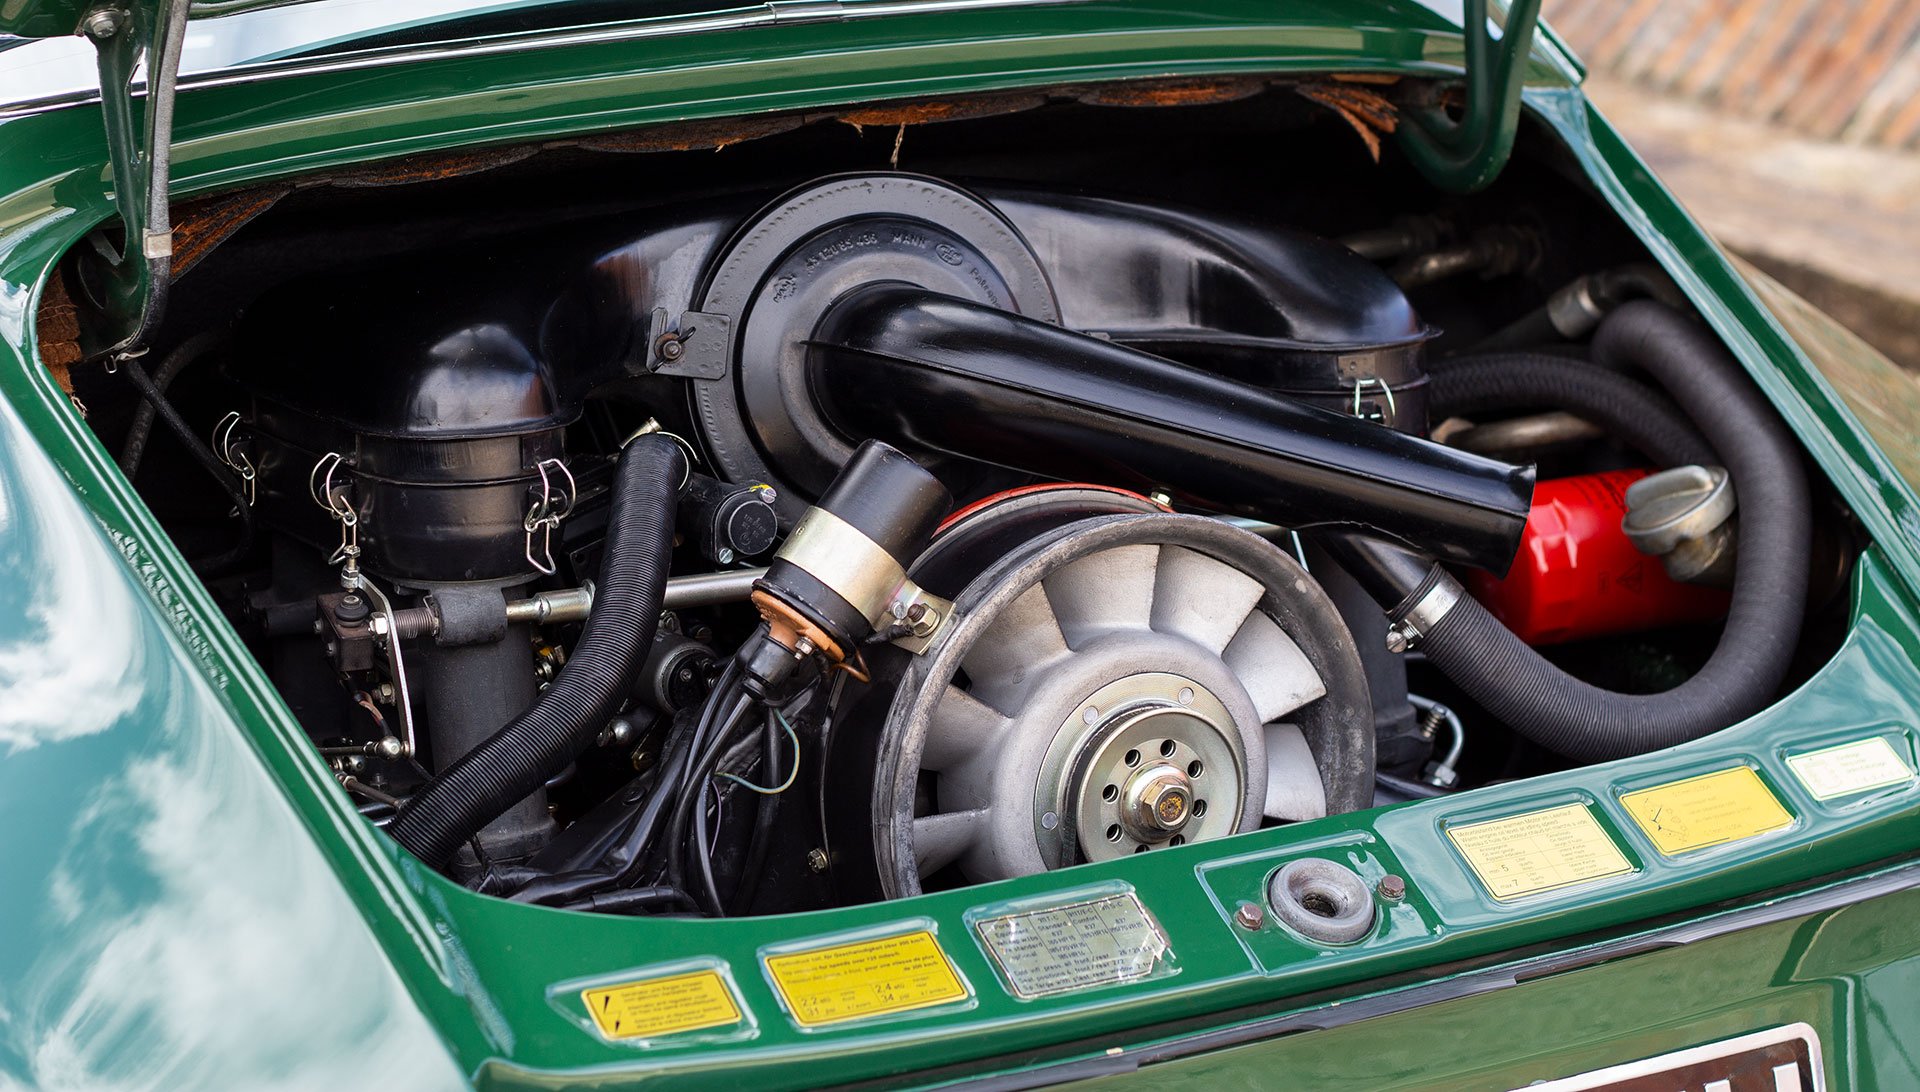 1966 porsche 911 engine for sale